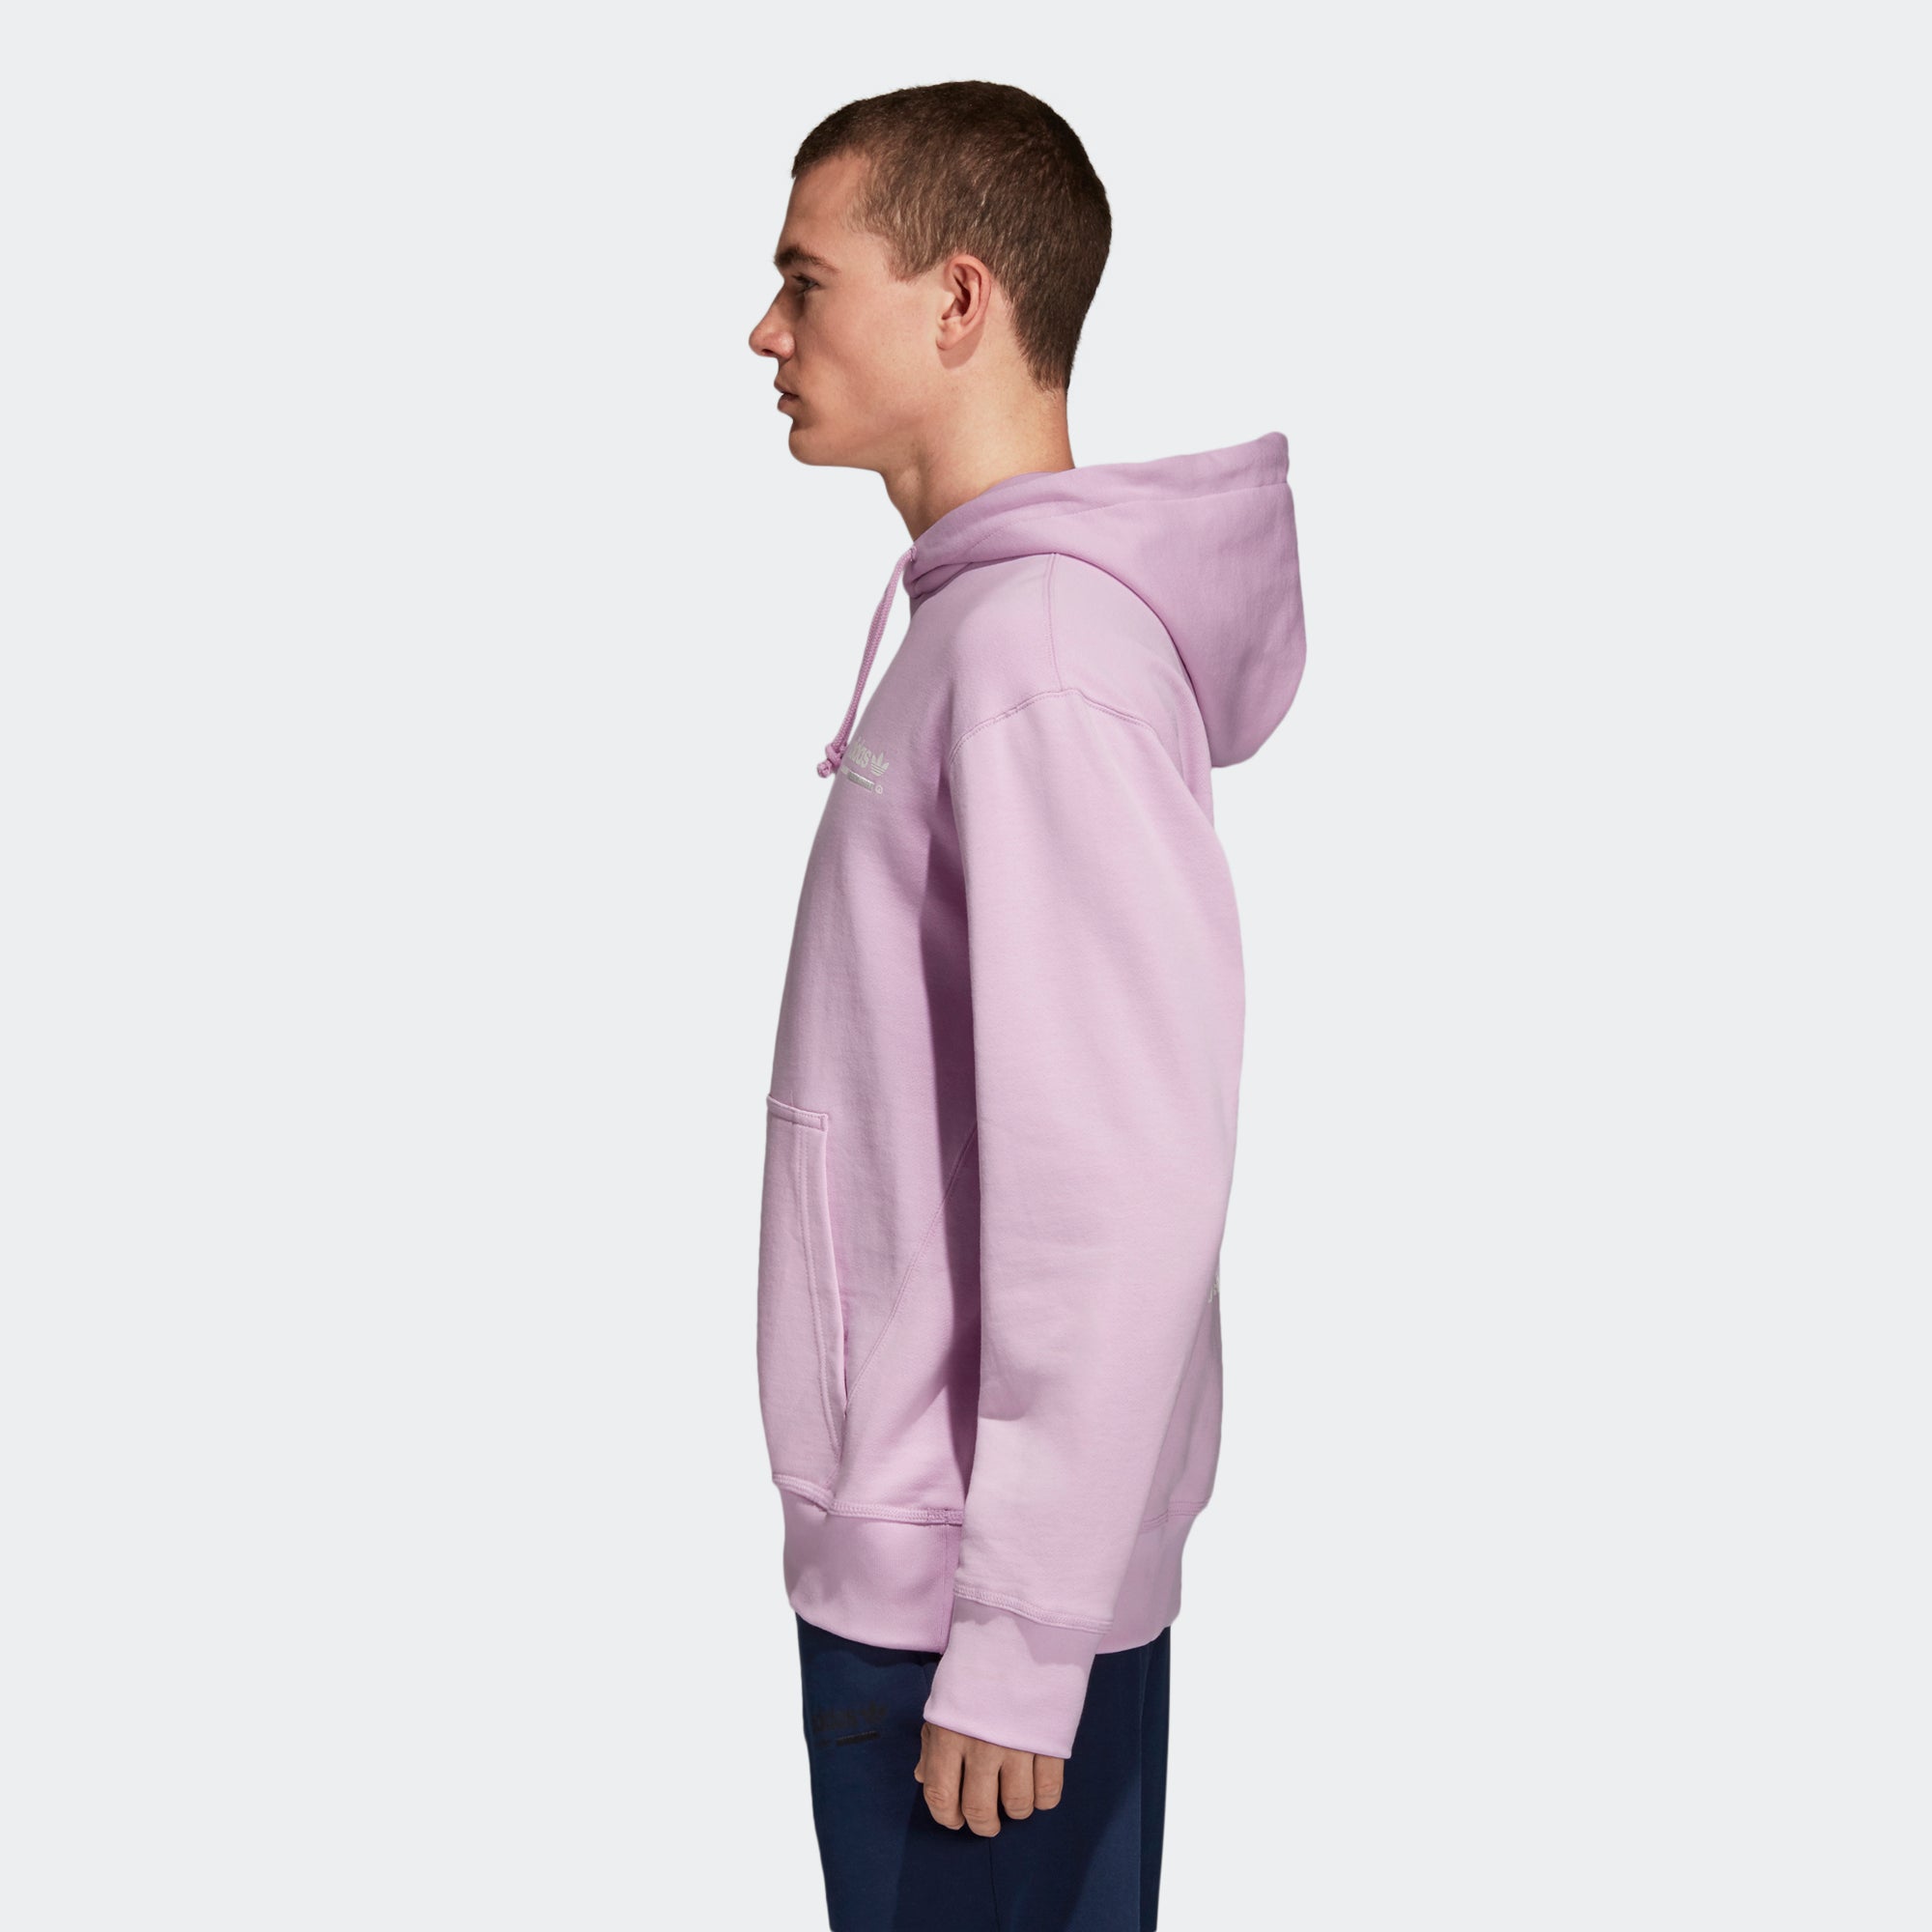 adidas kaval hoodie purple